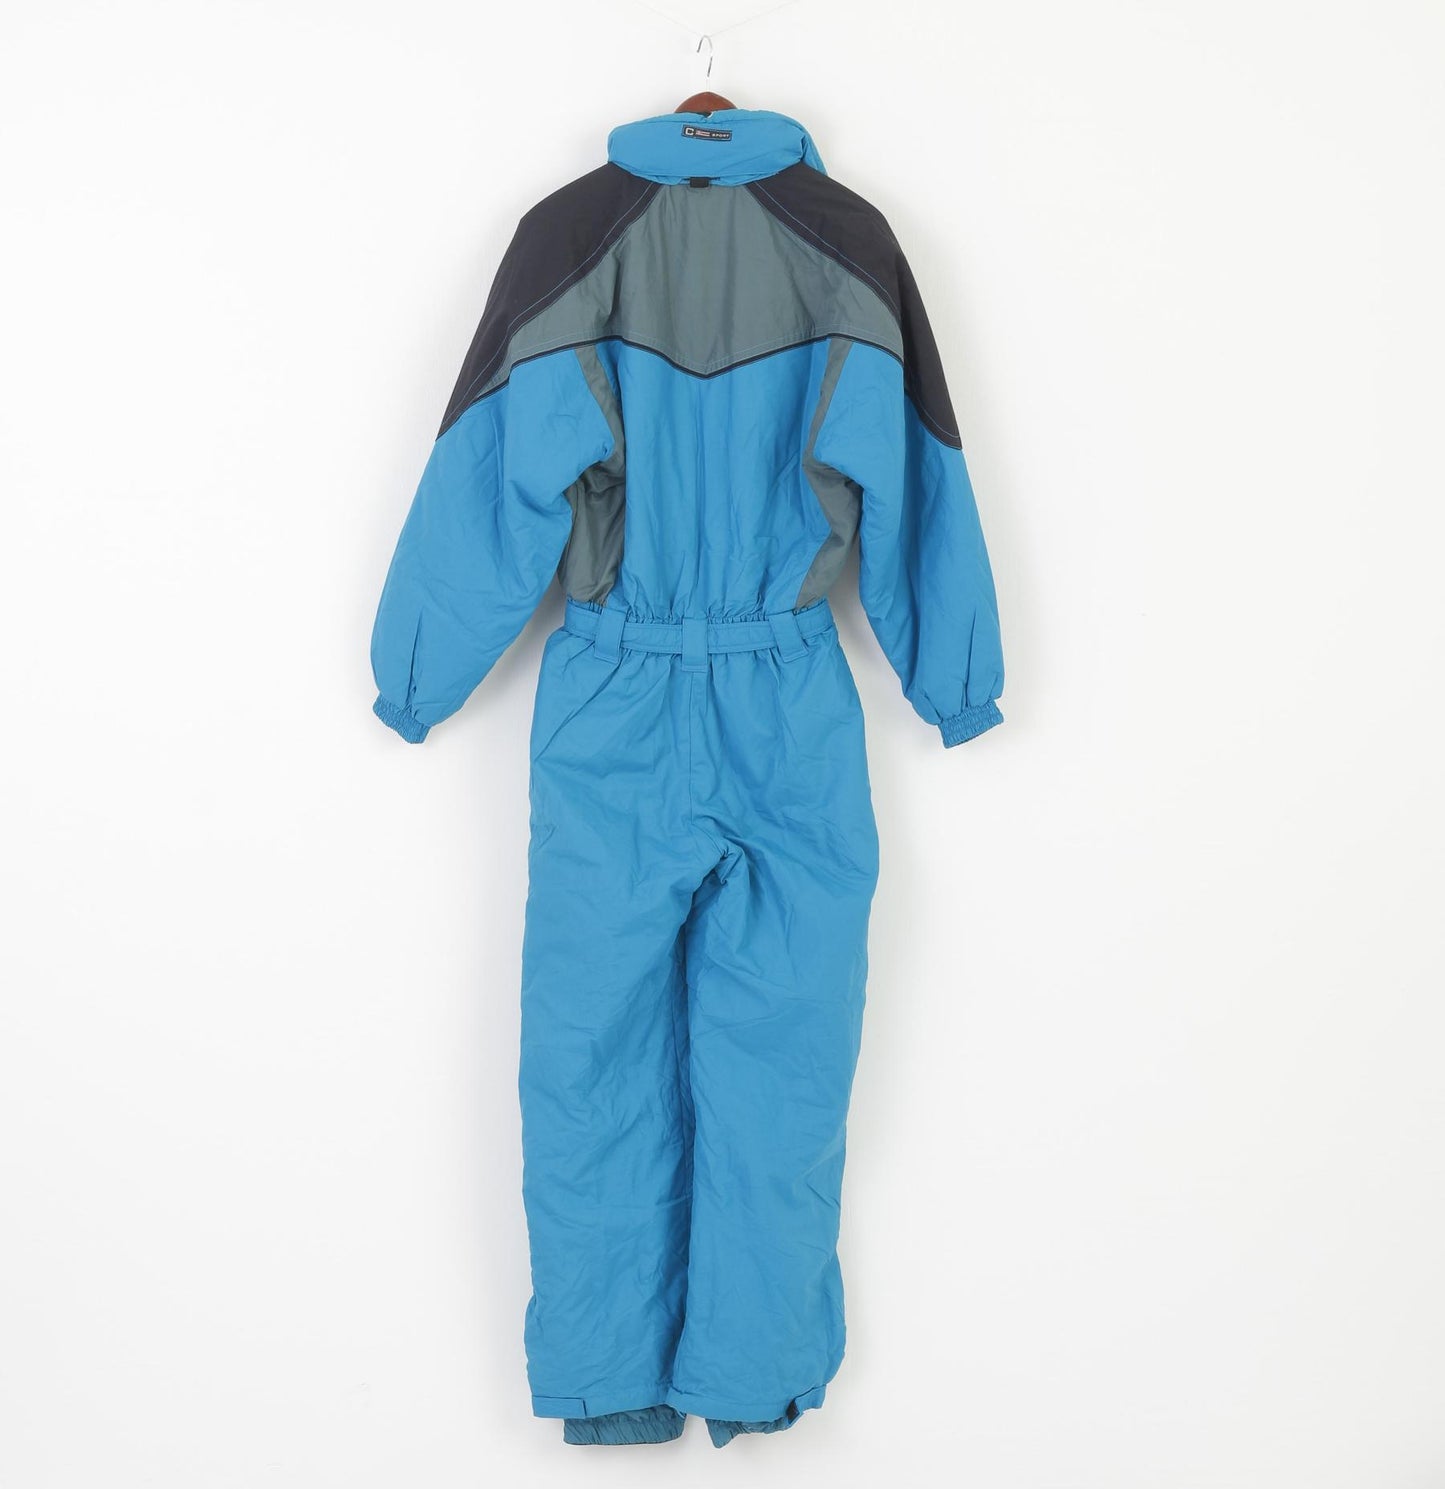 Tuta da sci Calmo Sportswear da donna L. Tuta da snowboard con cappuccio in nylon vintage blu